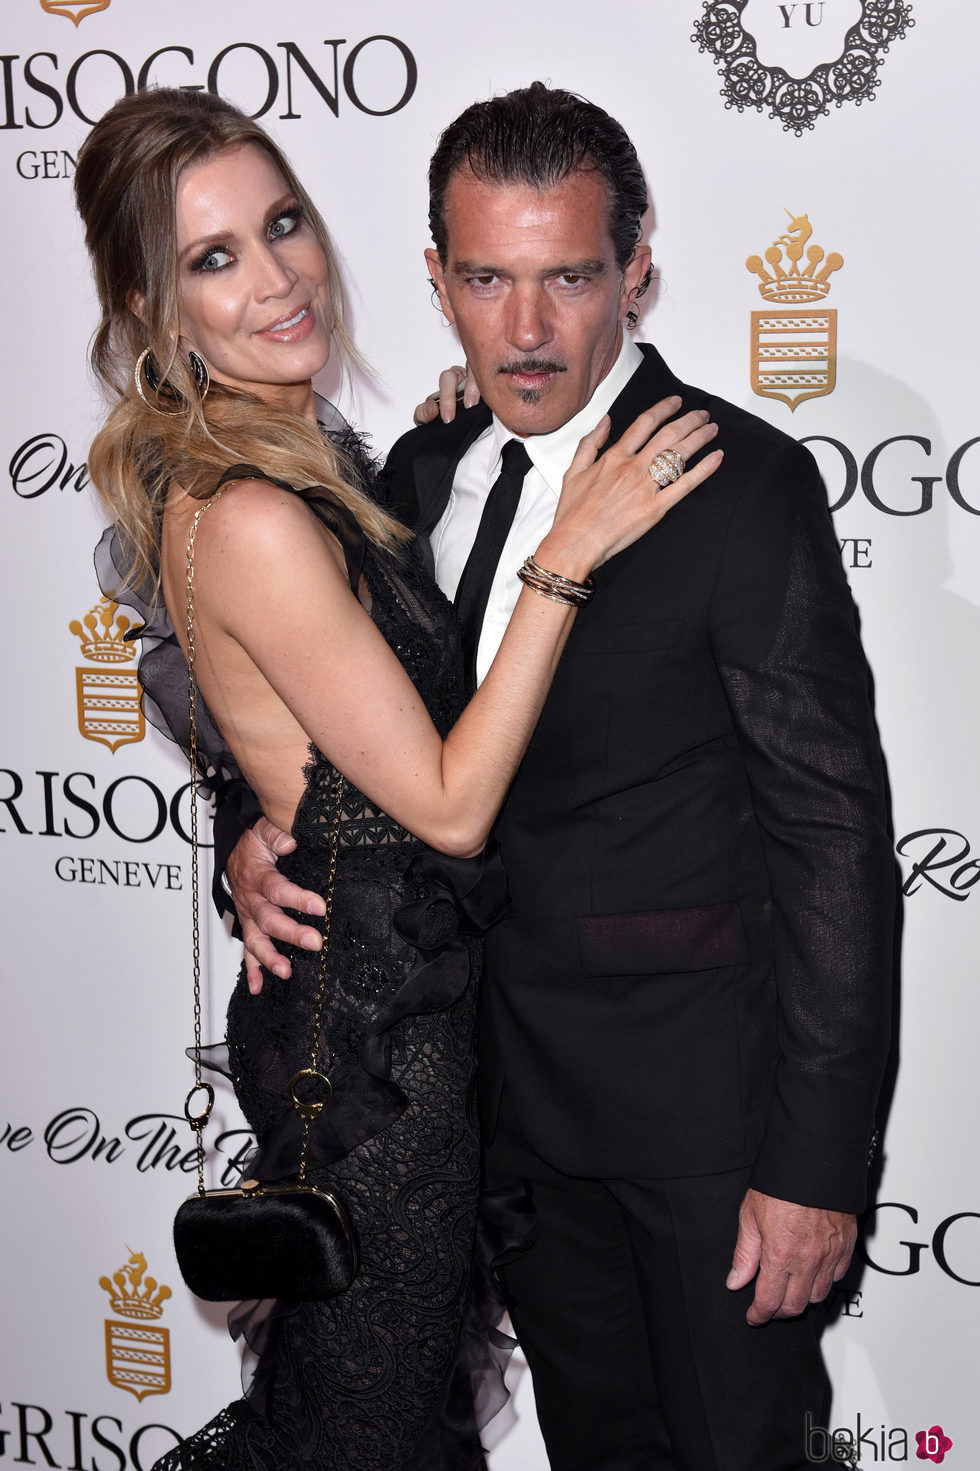 Antonio Banderas y Nicole Kimpel en el evento 'Love On The Rocks' en Cannes